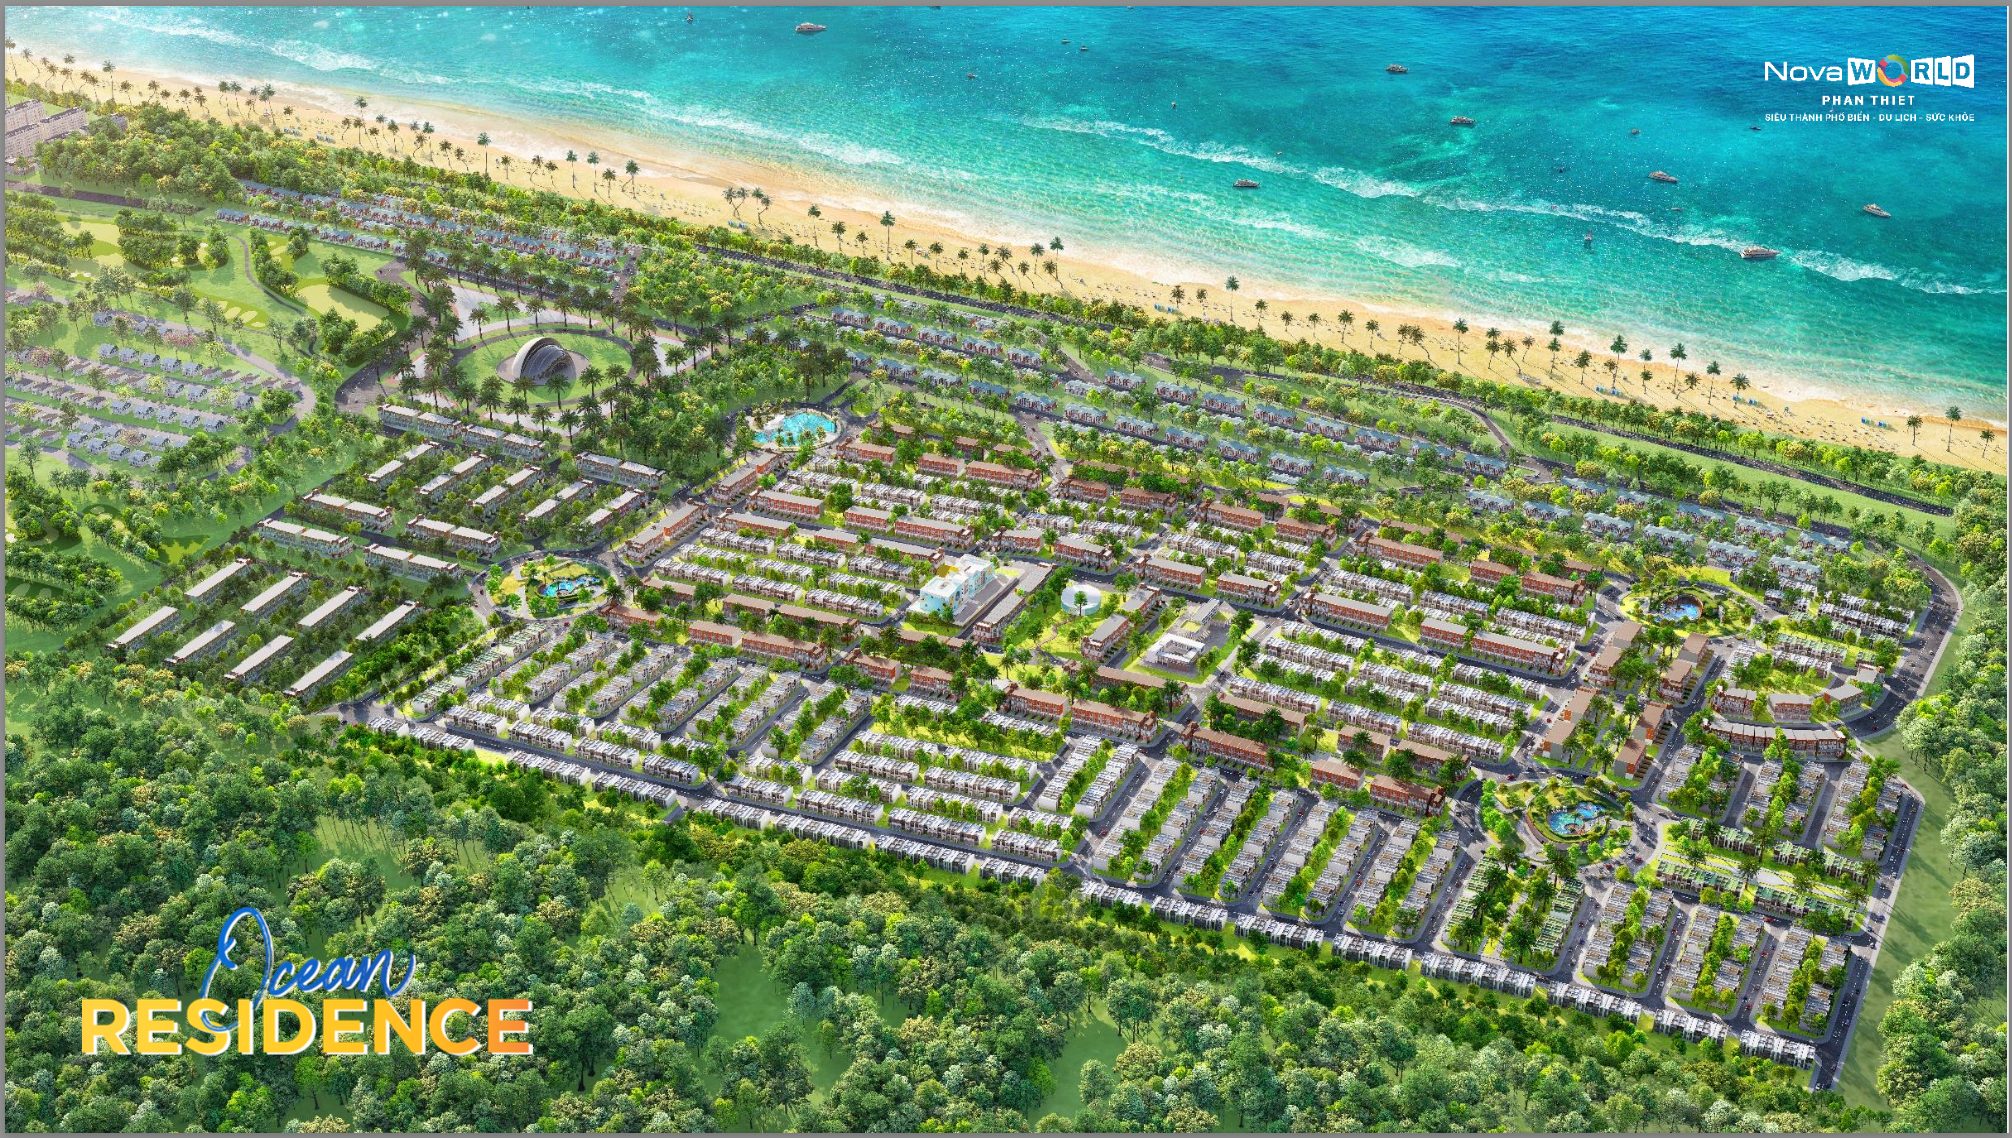 Ocean Residence – Novaworld Phan Thiết